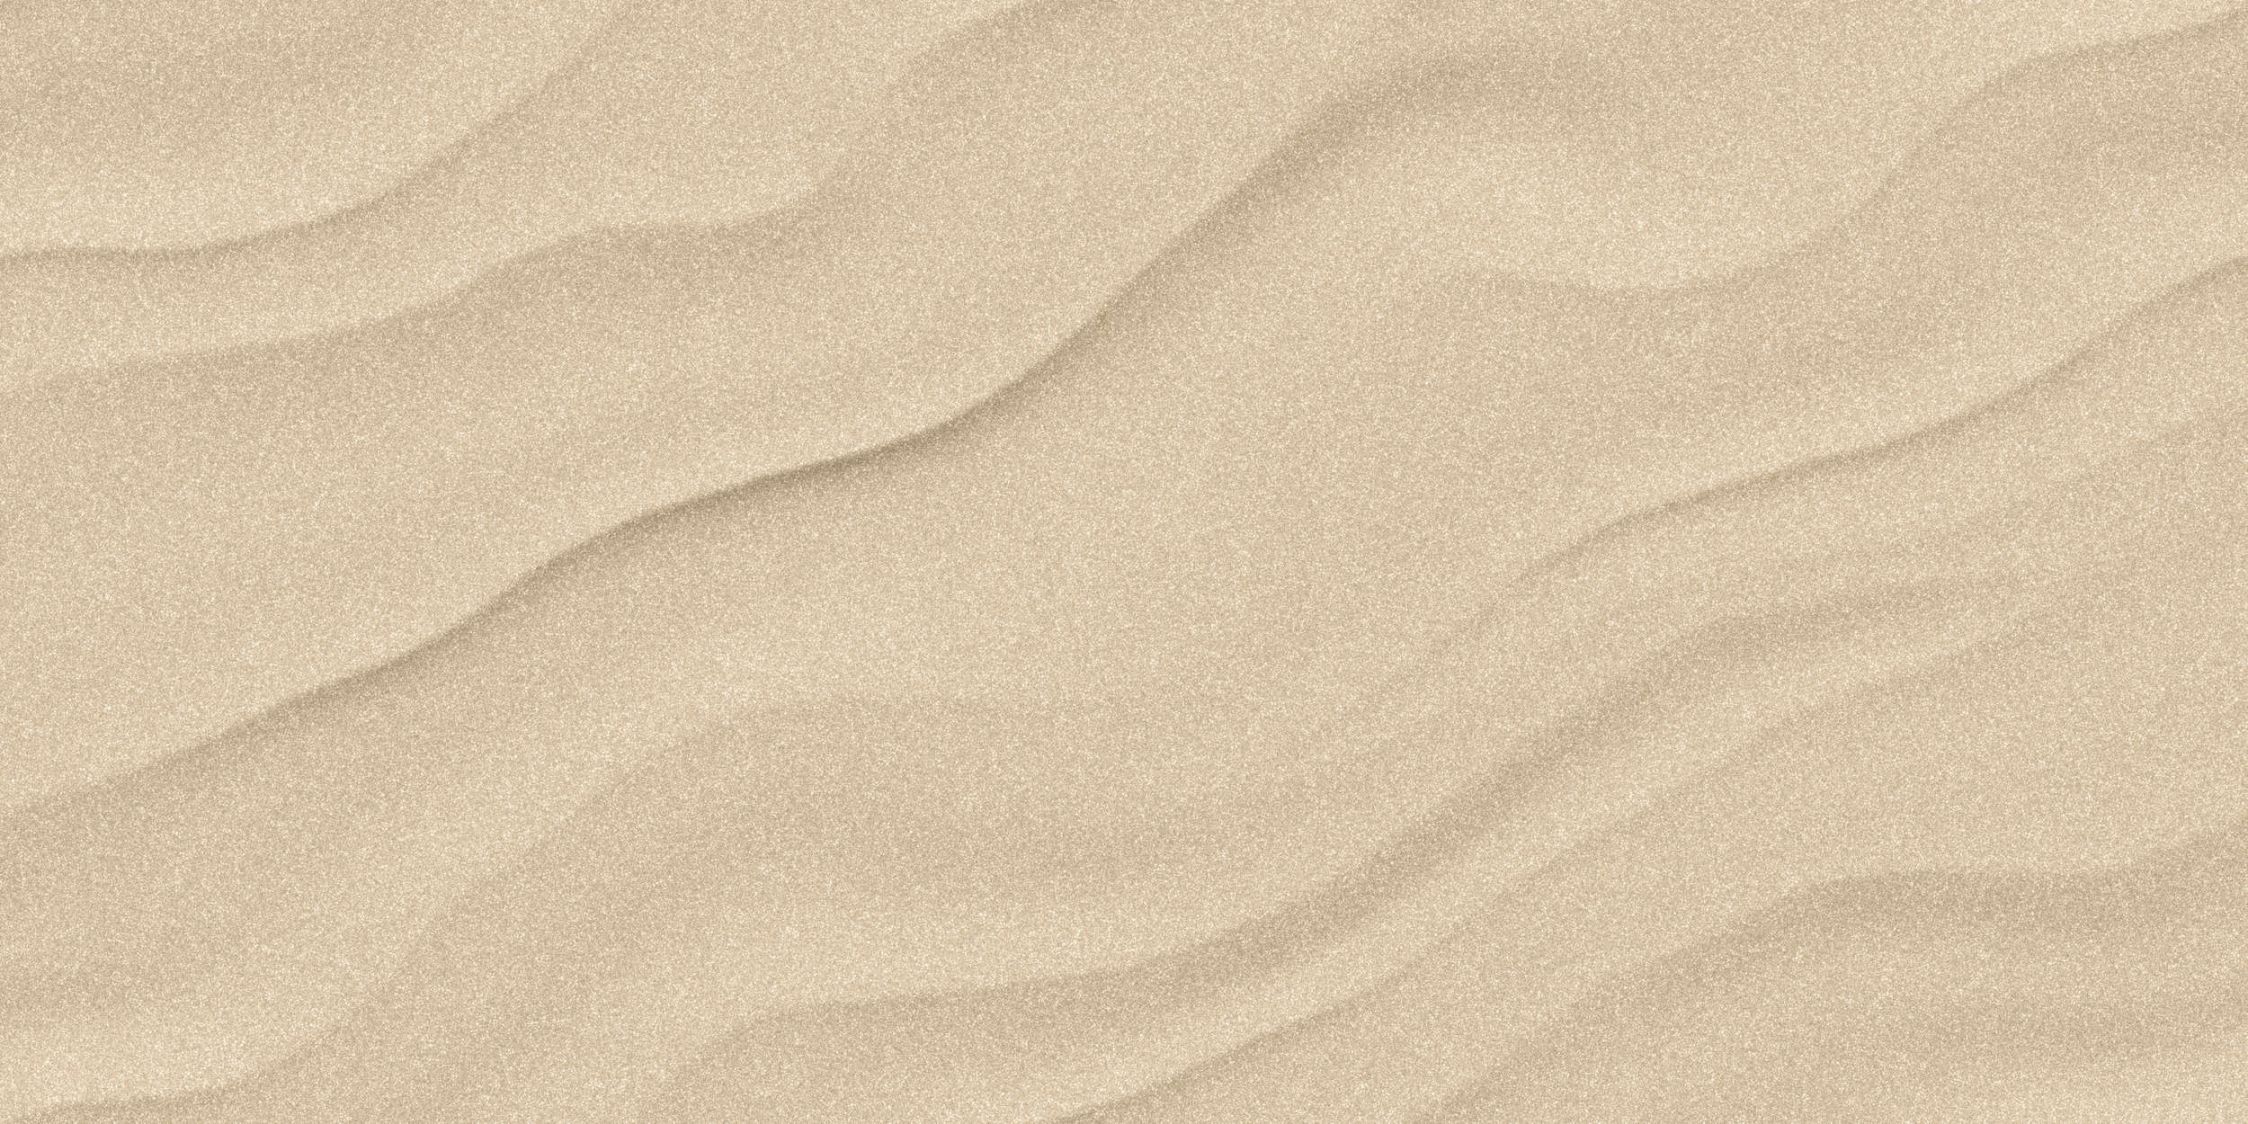             Fototapete »sahara« - Sandiger Wüstenboden mit Büttenpapier-Optik – Glattes, leicht glänzendes Premiumvlies
        